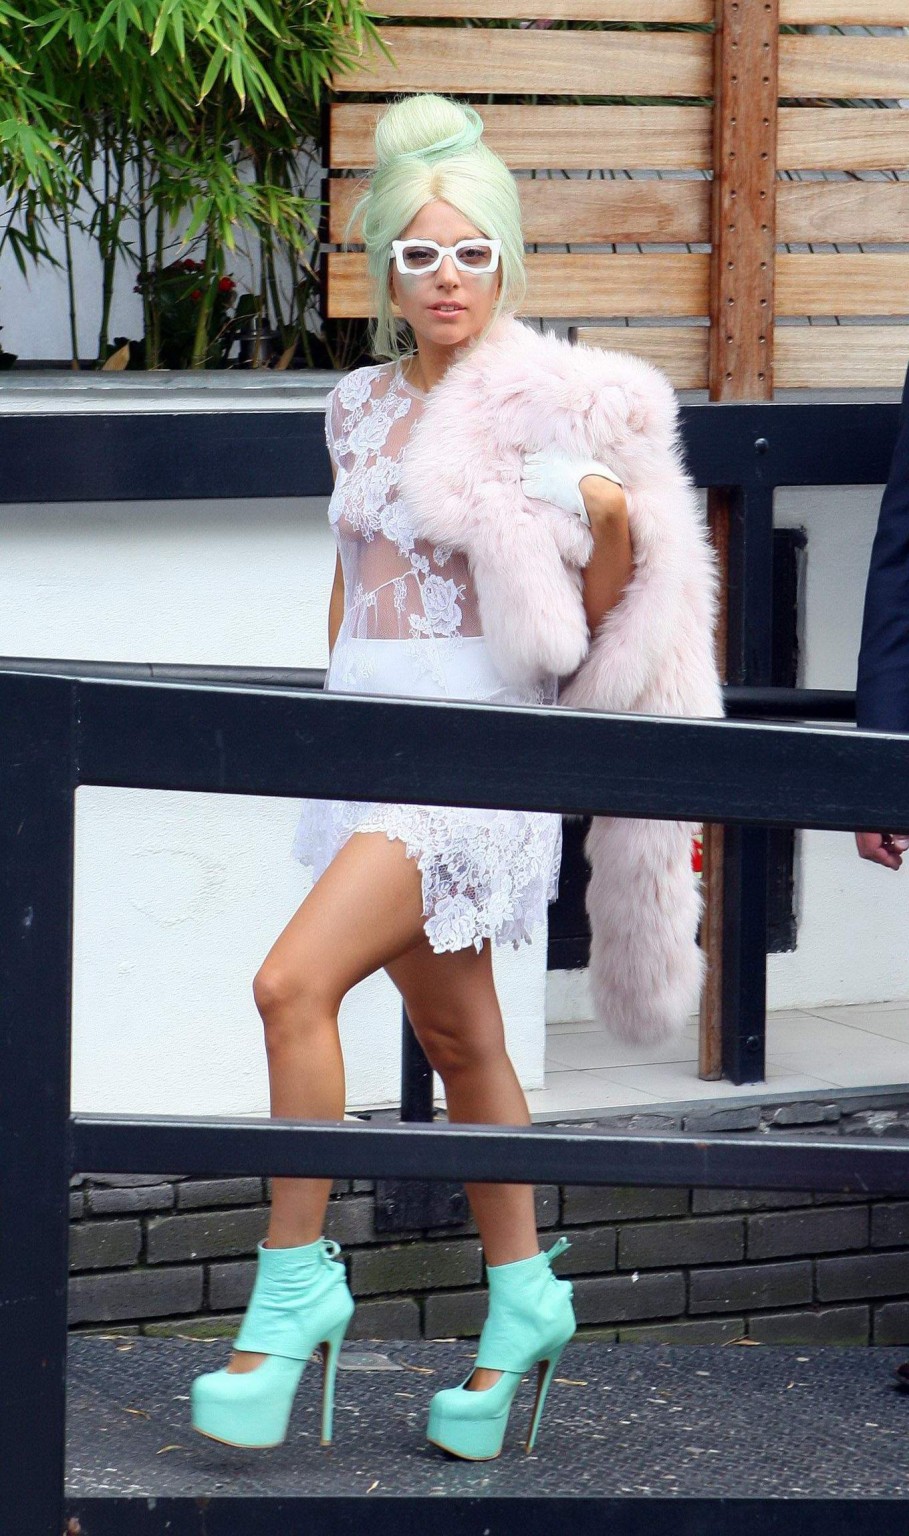 Lady Gaga, seins nus dans une robe en dentelle transparente, se rend aux studios de la chaîne Itv à Londres.
 #75286298